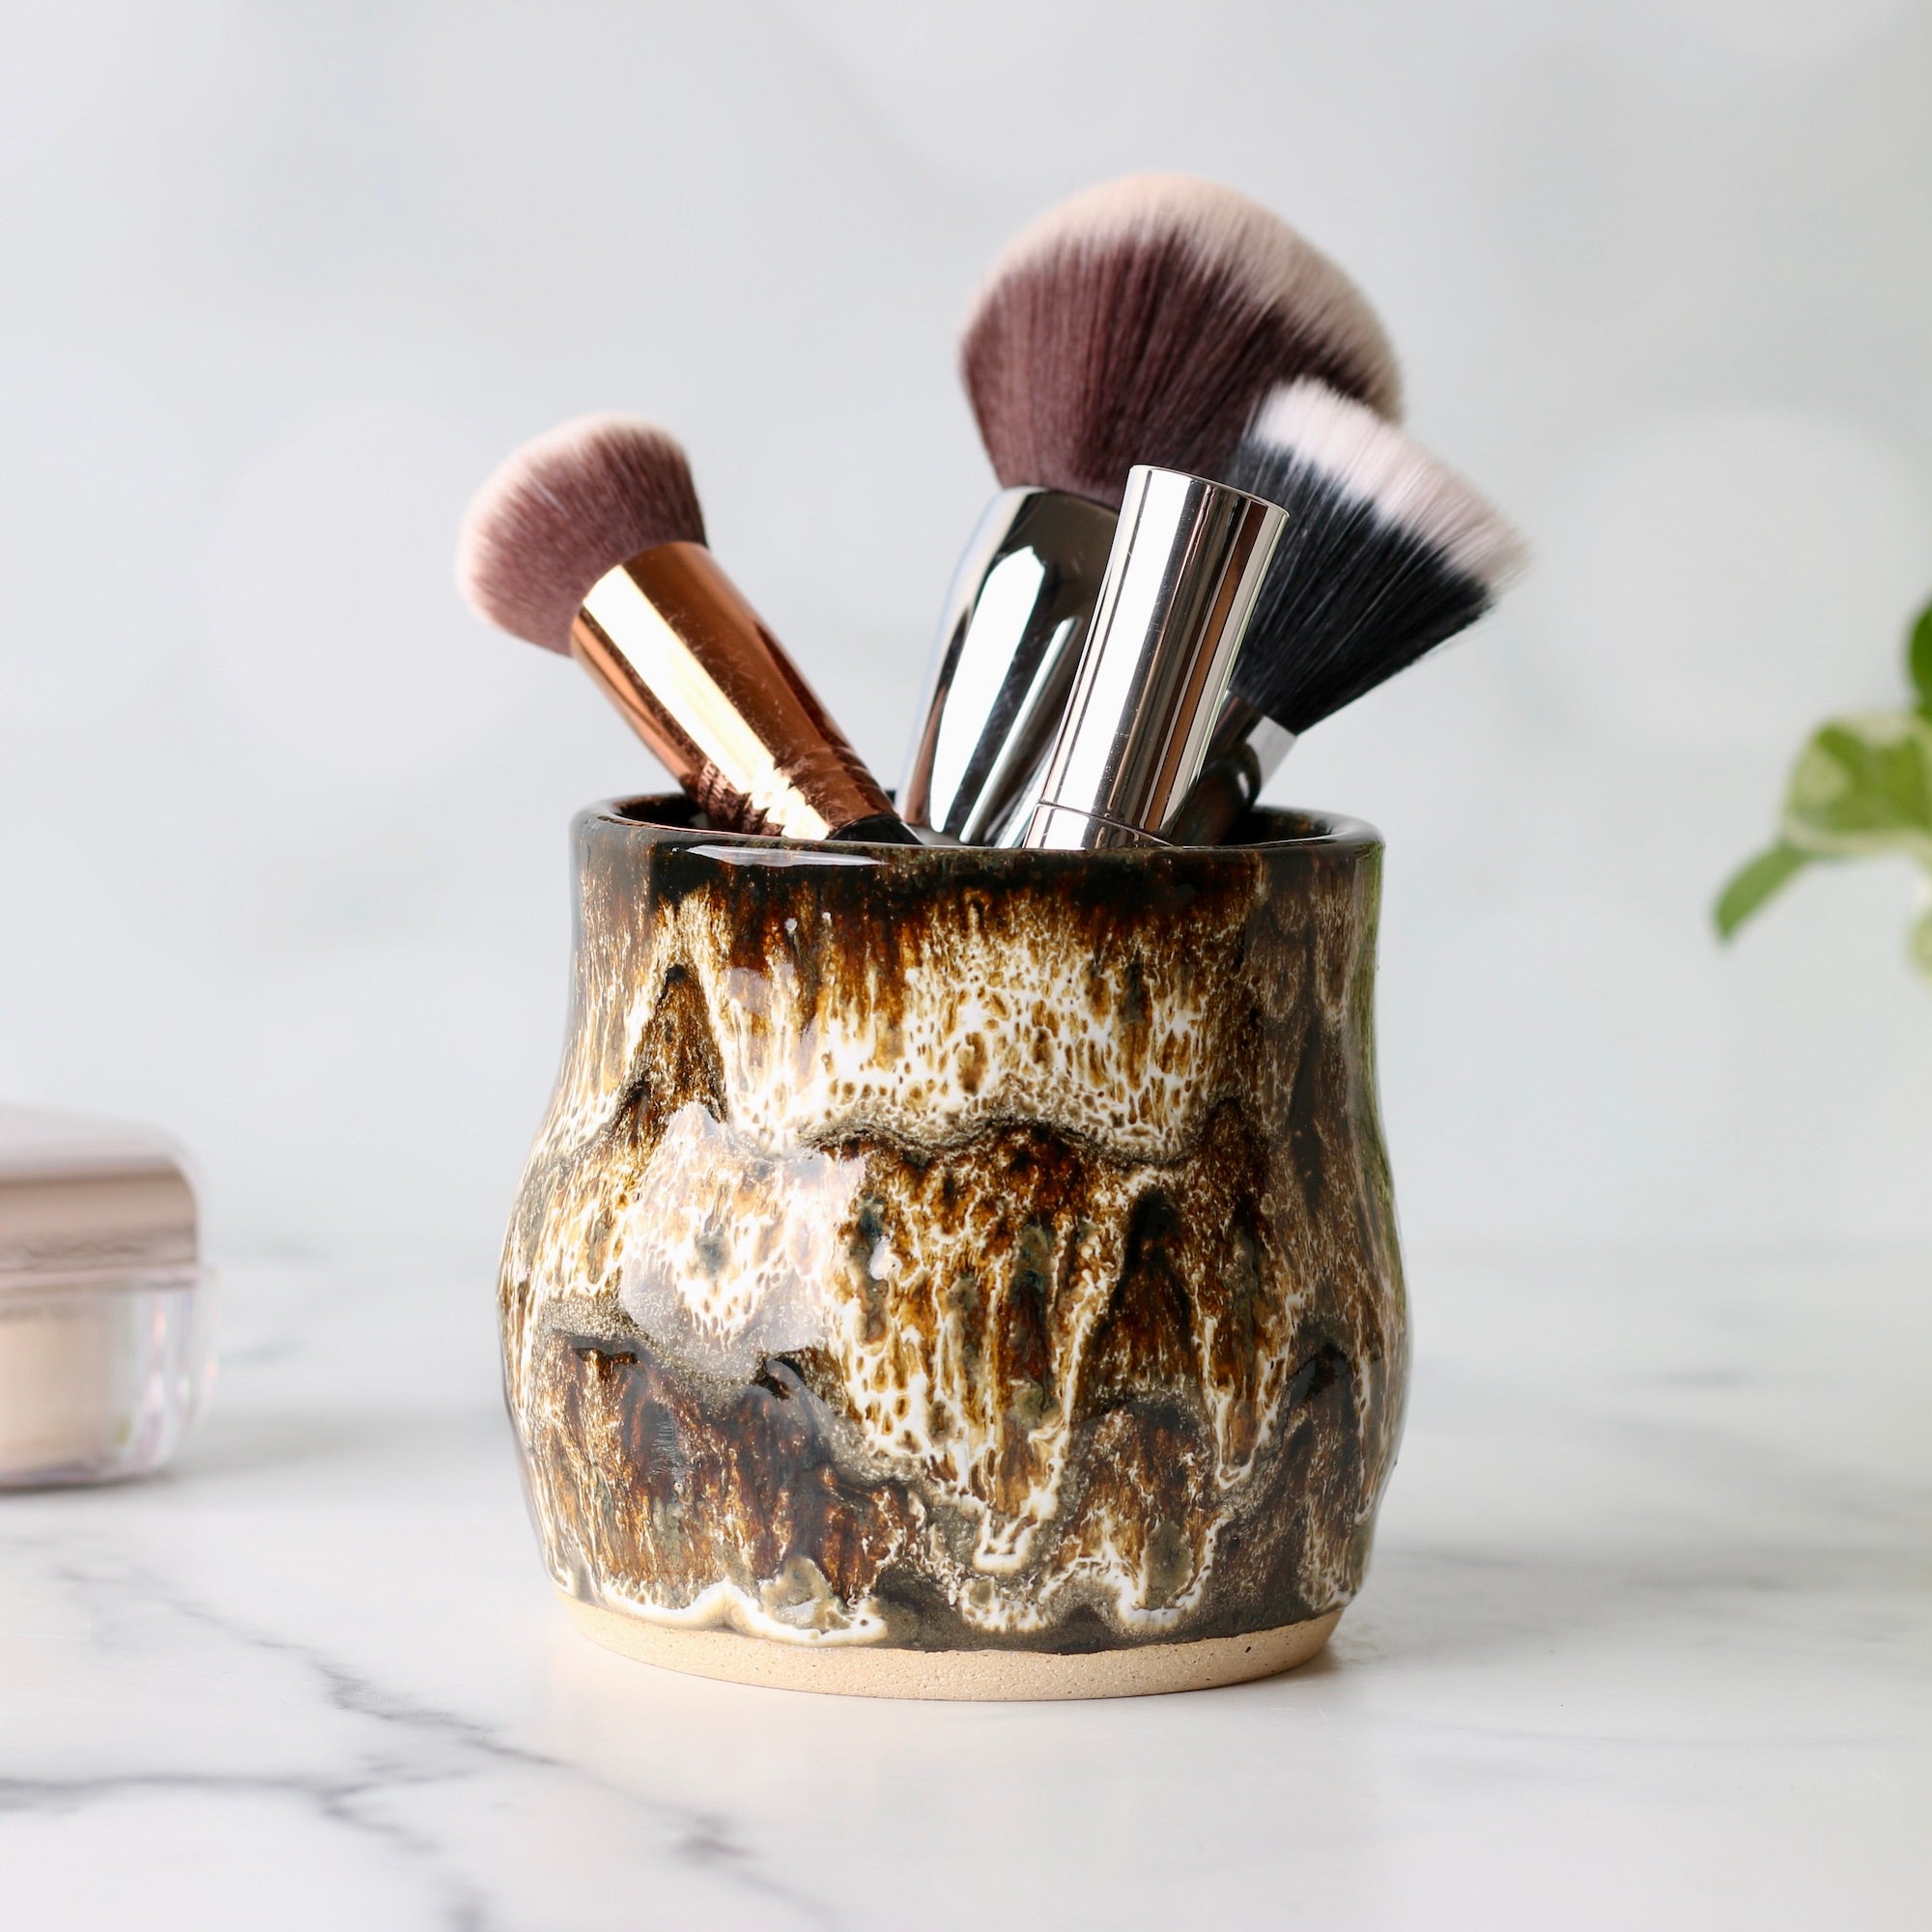 For the Home - Make Up Brush Holders – Wheeler Ceramics